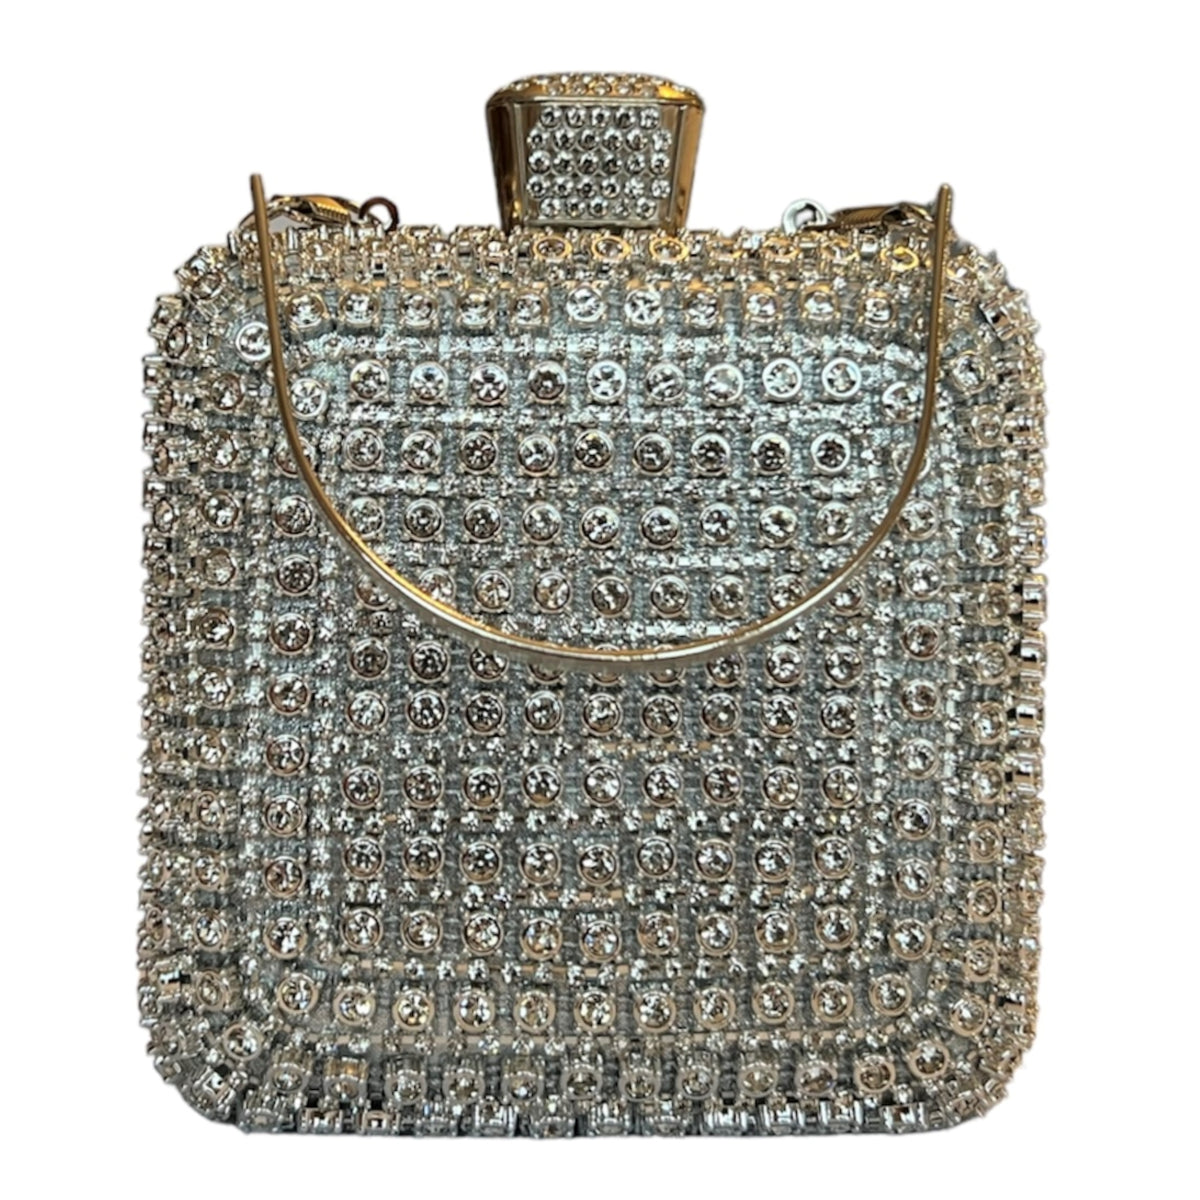 Ce sac de soirée Mia argent est le petit luxe parfait pour compléter votre tenue. Avec son élégante couleur argent et sa taille pratique, il ajoutera la touche finale parfaite pour vos soirées spéciales. Faites-vous plaisir avec ce sac de qualité, conçu pour vous offrir un look chic et sophistiqué.